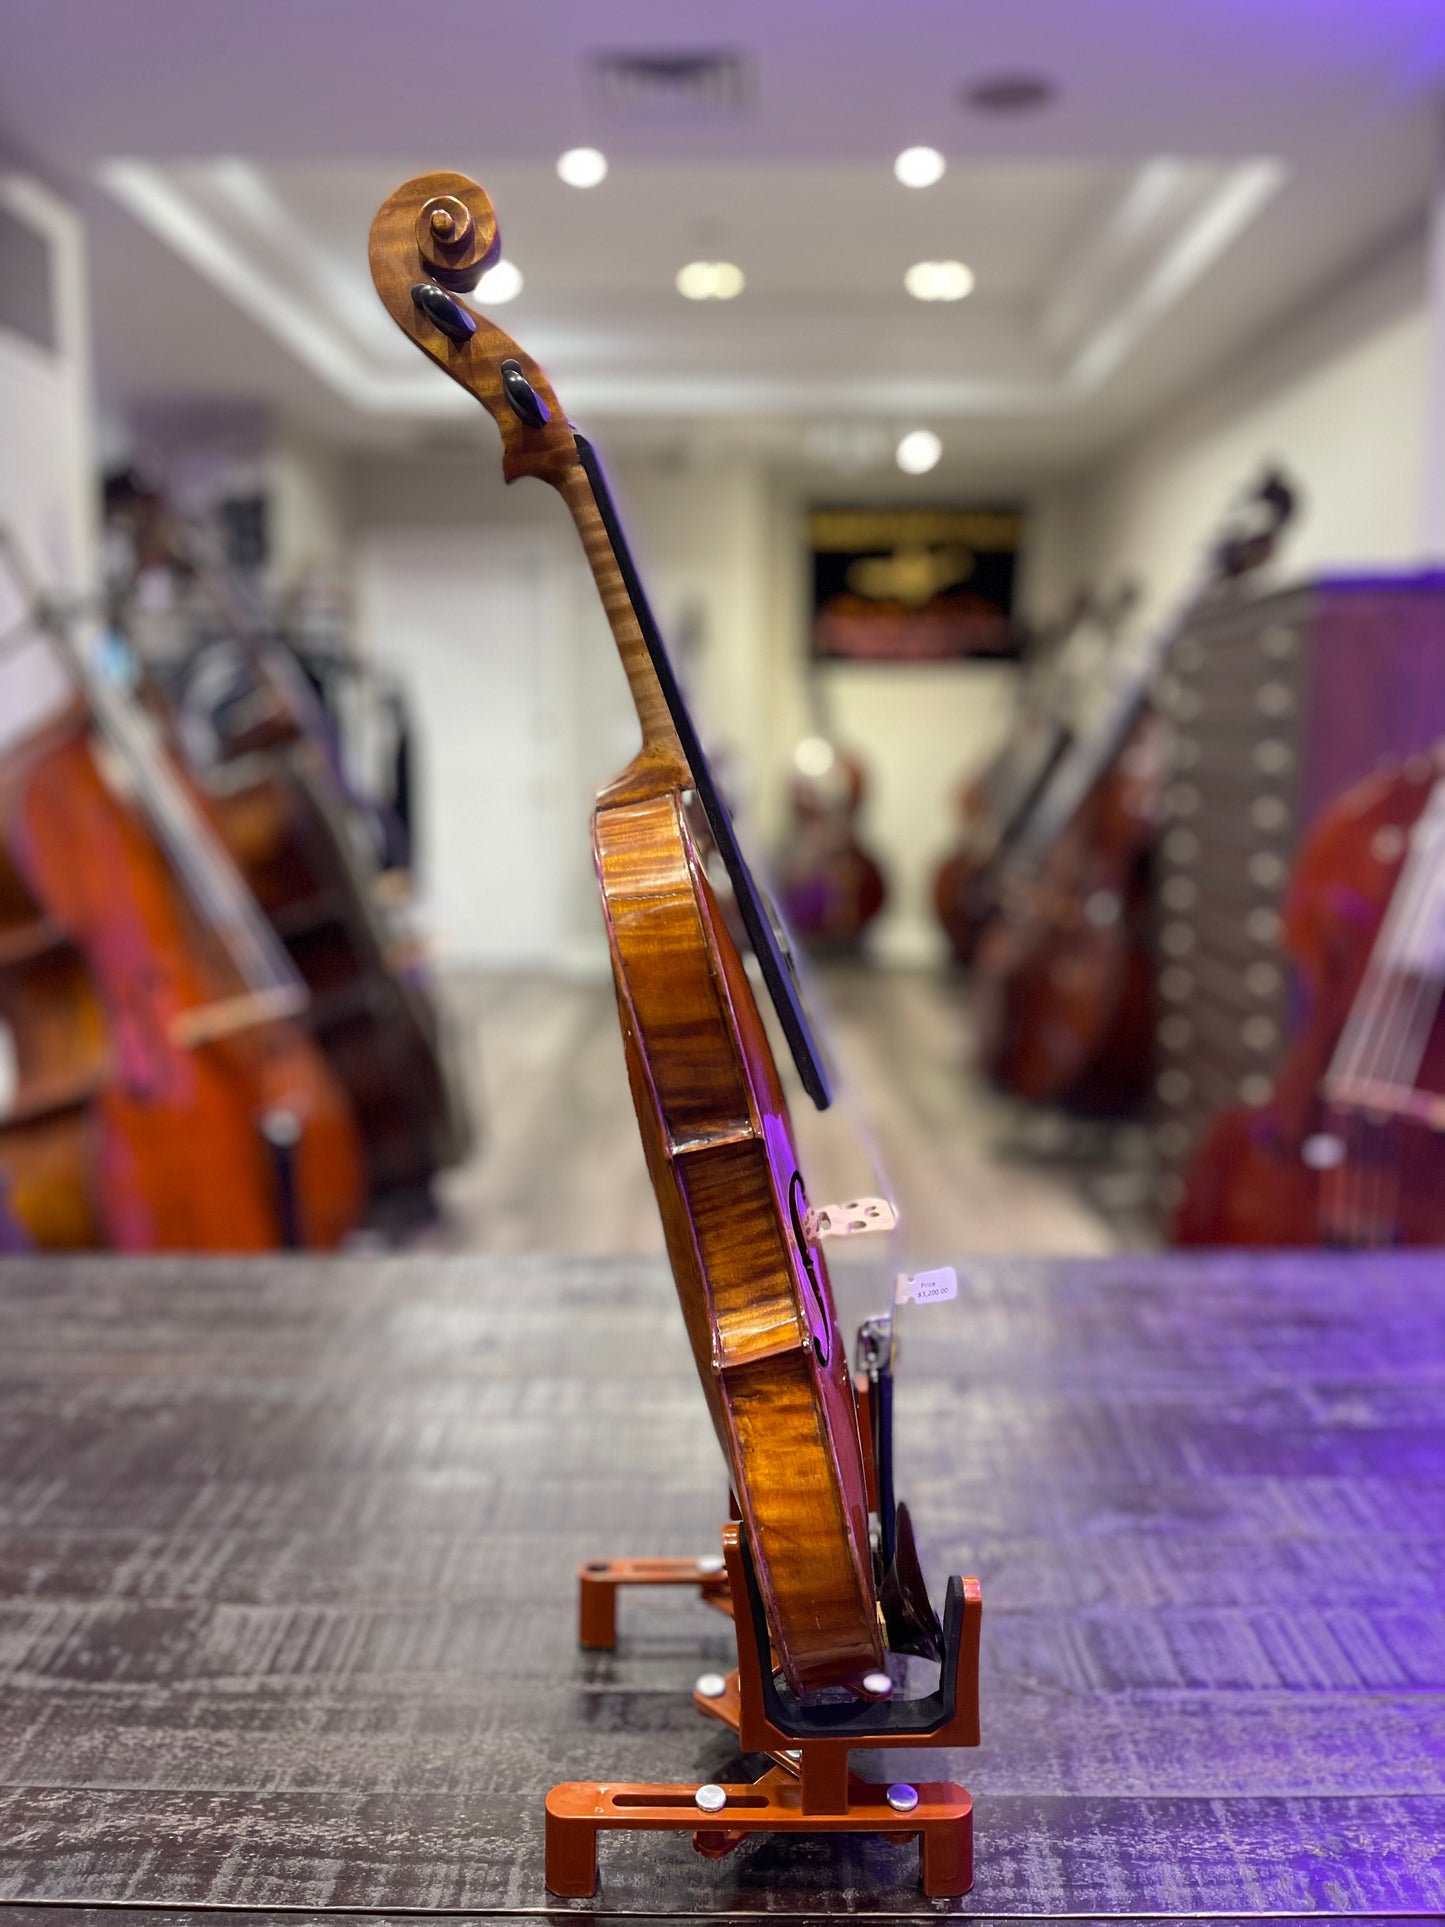 Maggini Model Violin